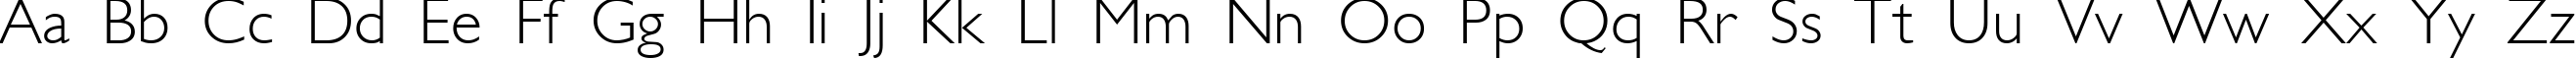 Пример написания английского алфавита шрифтом GalsLight